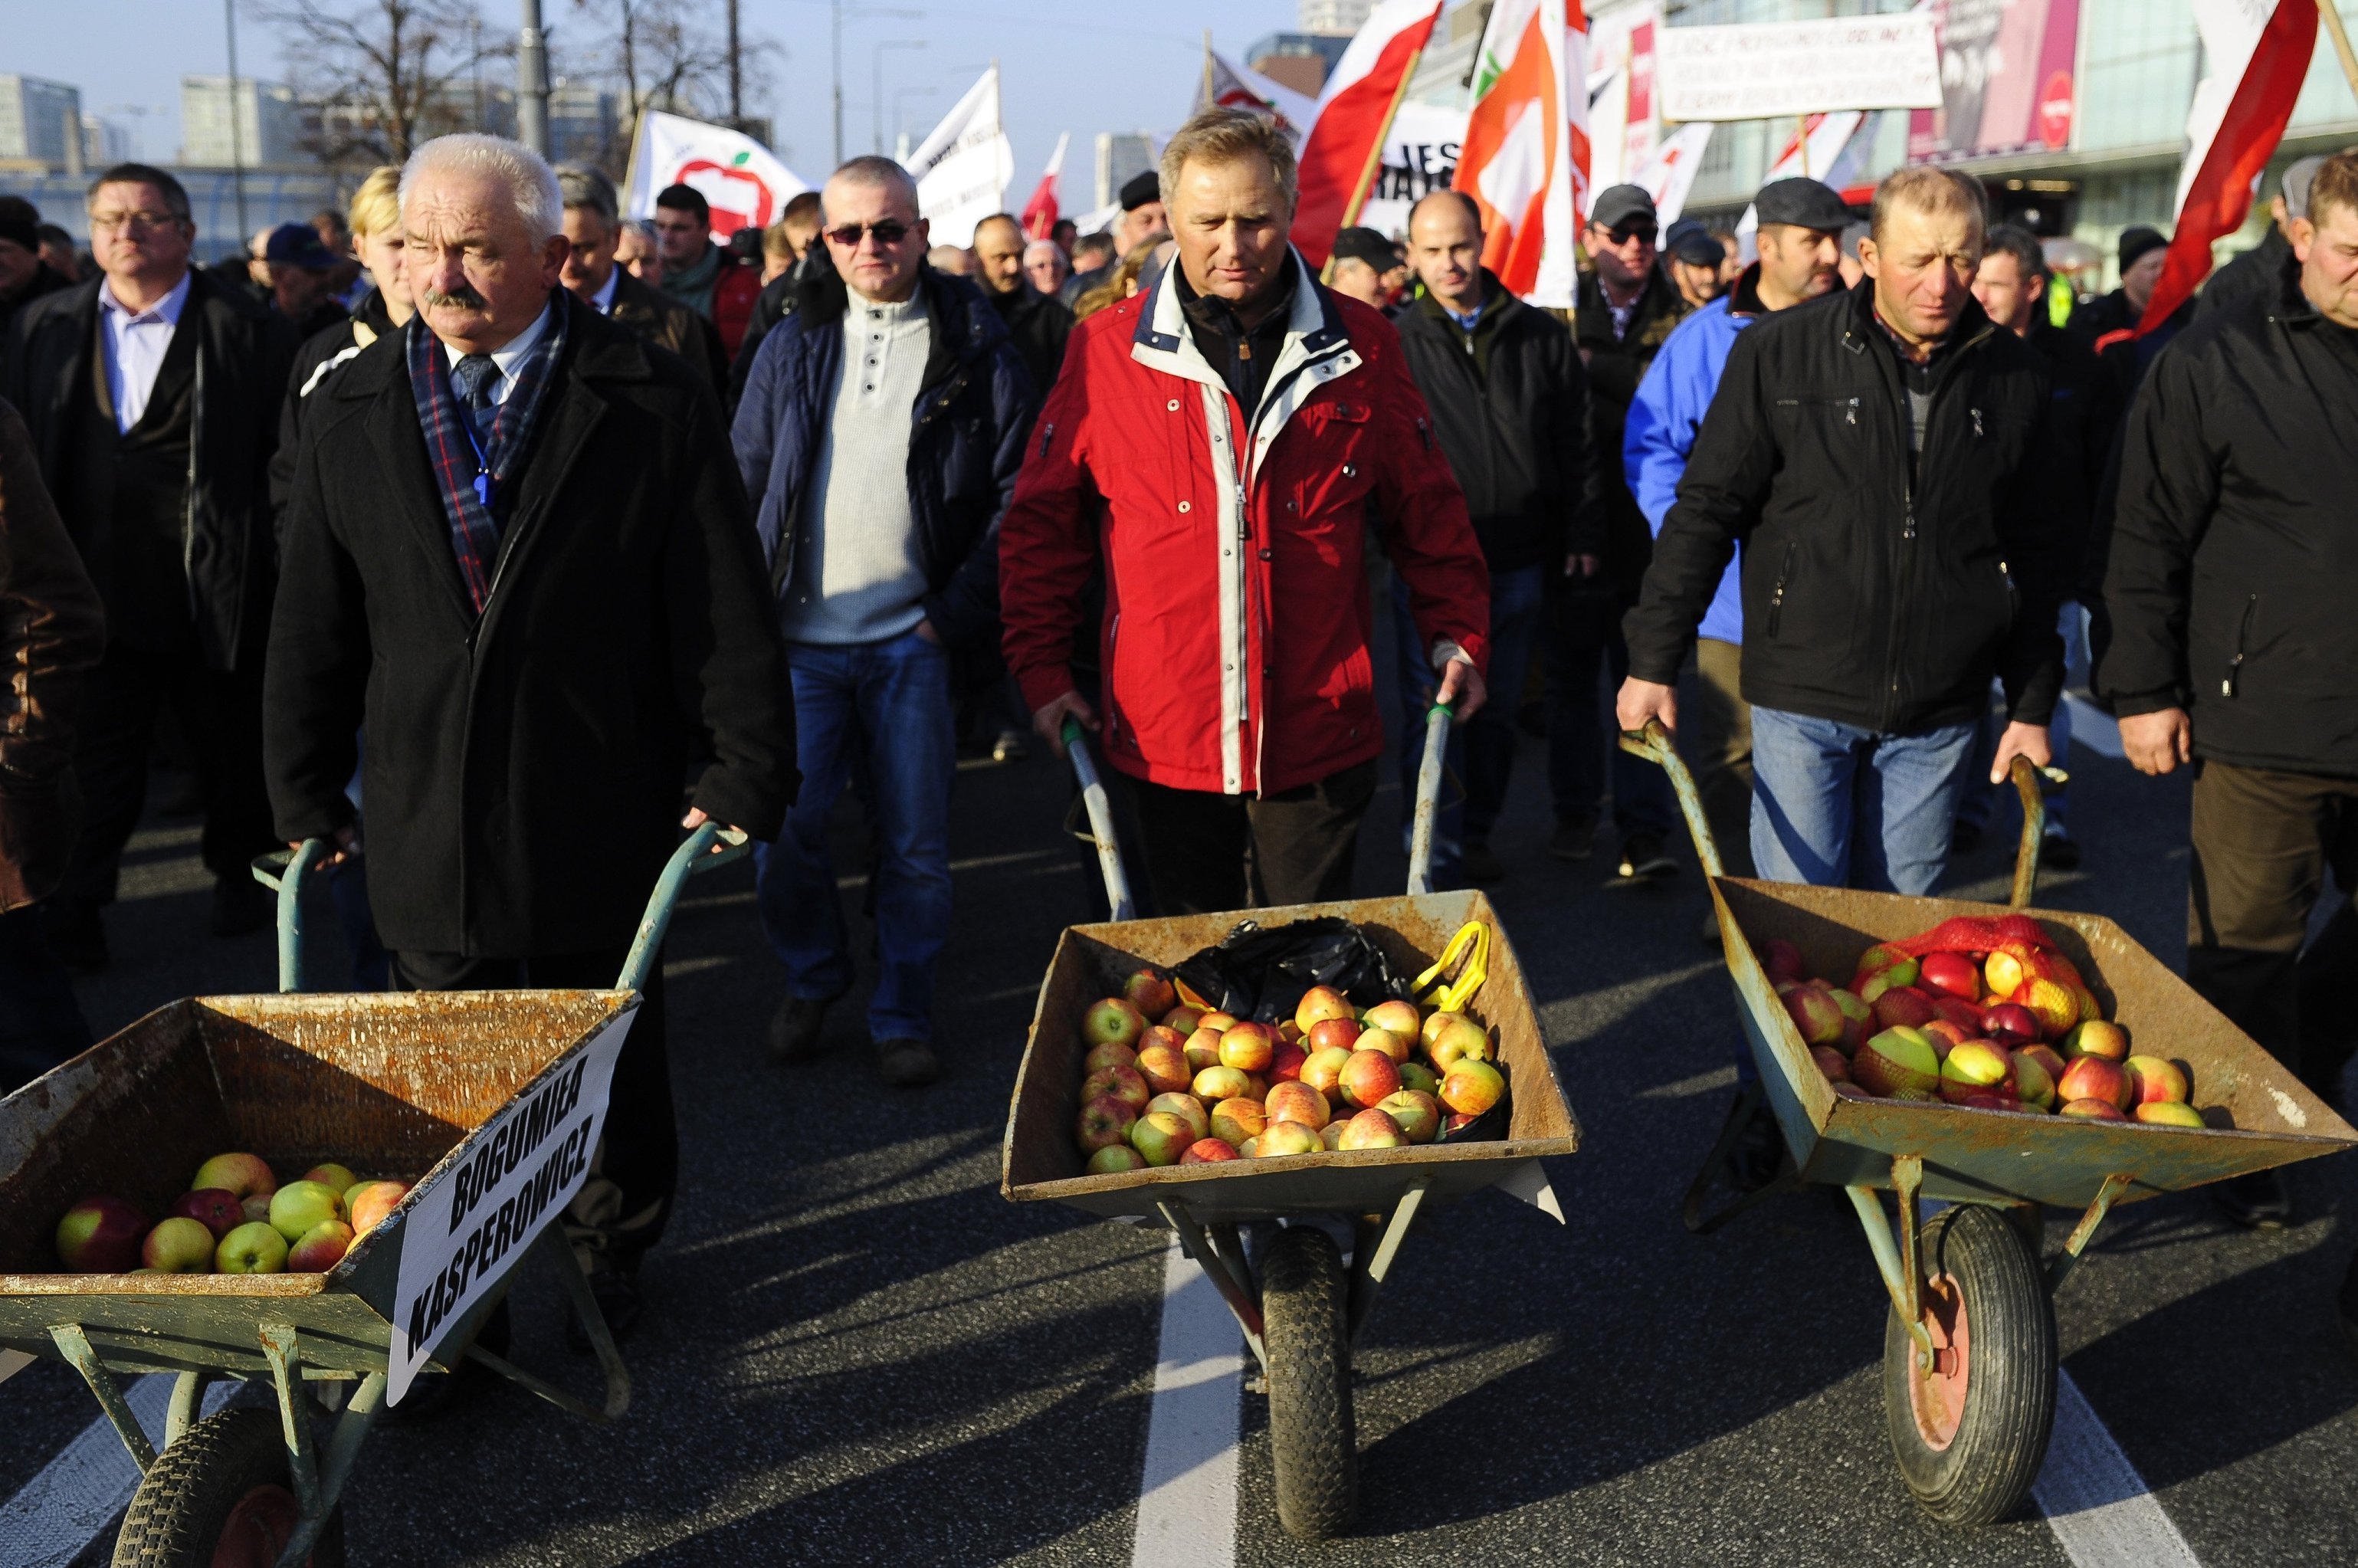 Фермеры и садоводы Польши на акции протеста против запрета России на ввоз польских овощей и фруктов  в Варшаве,архивное фото